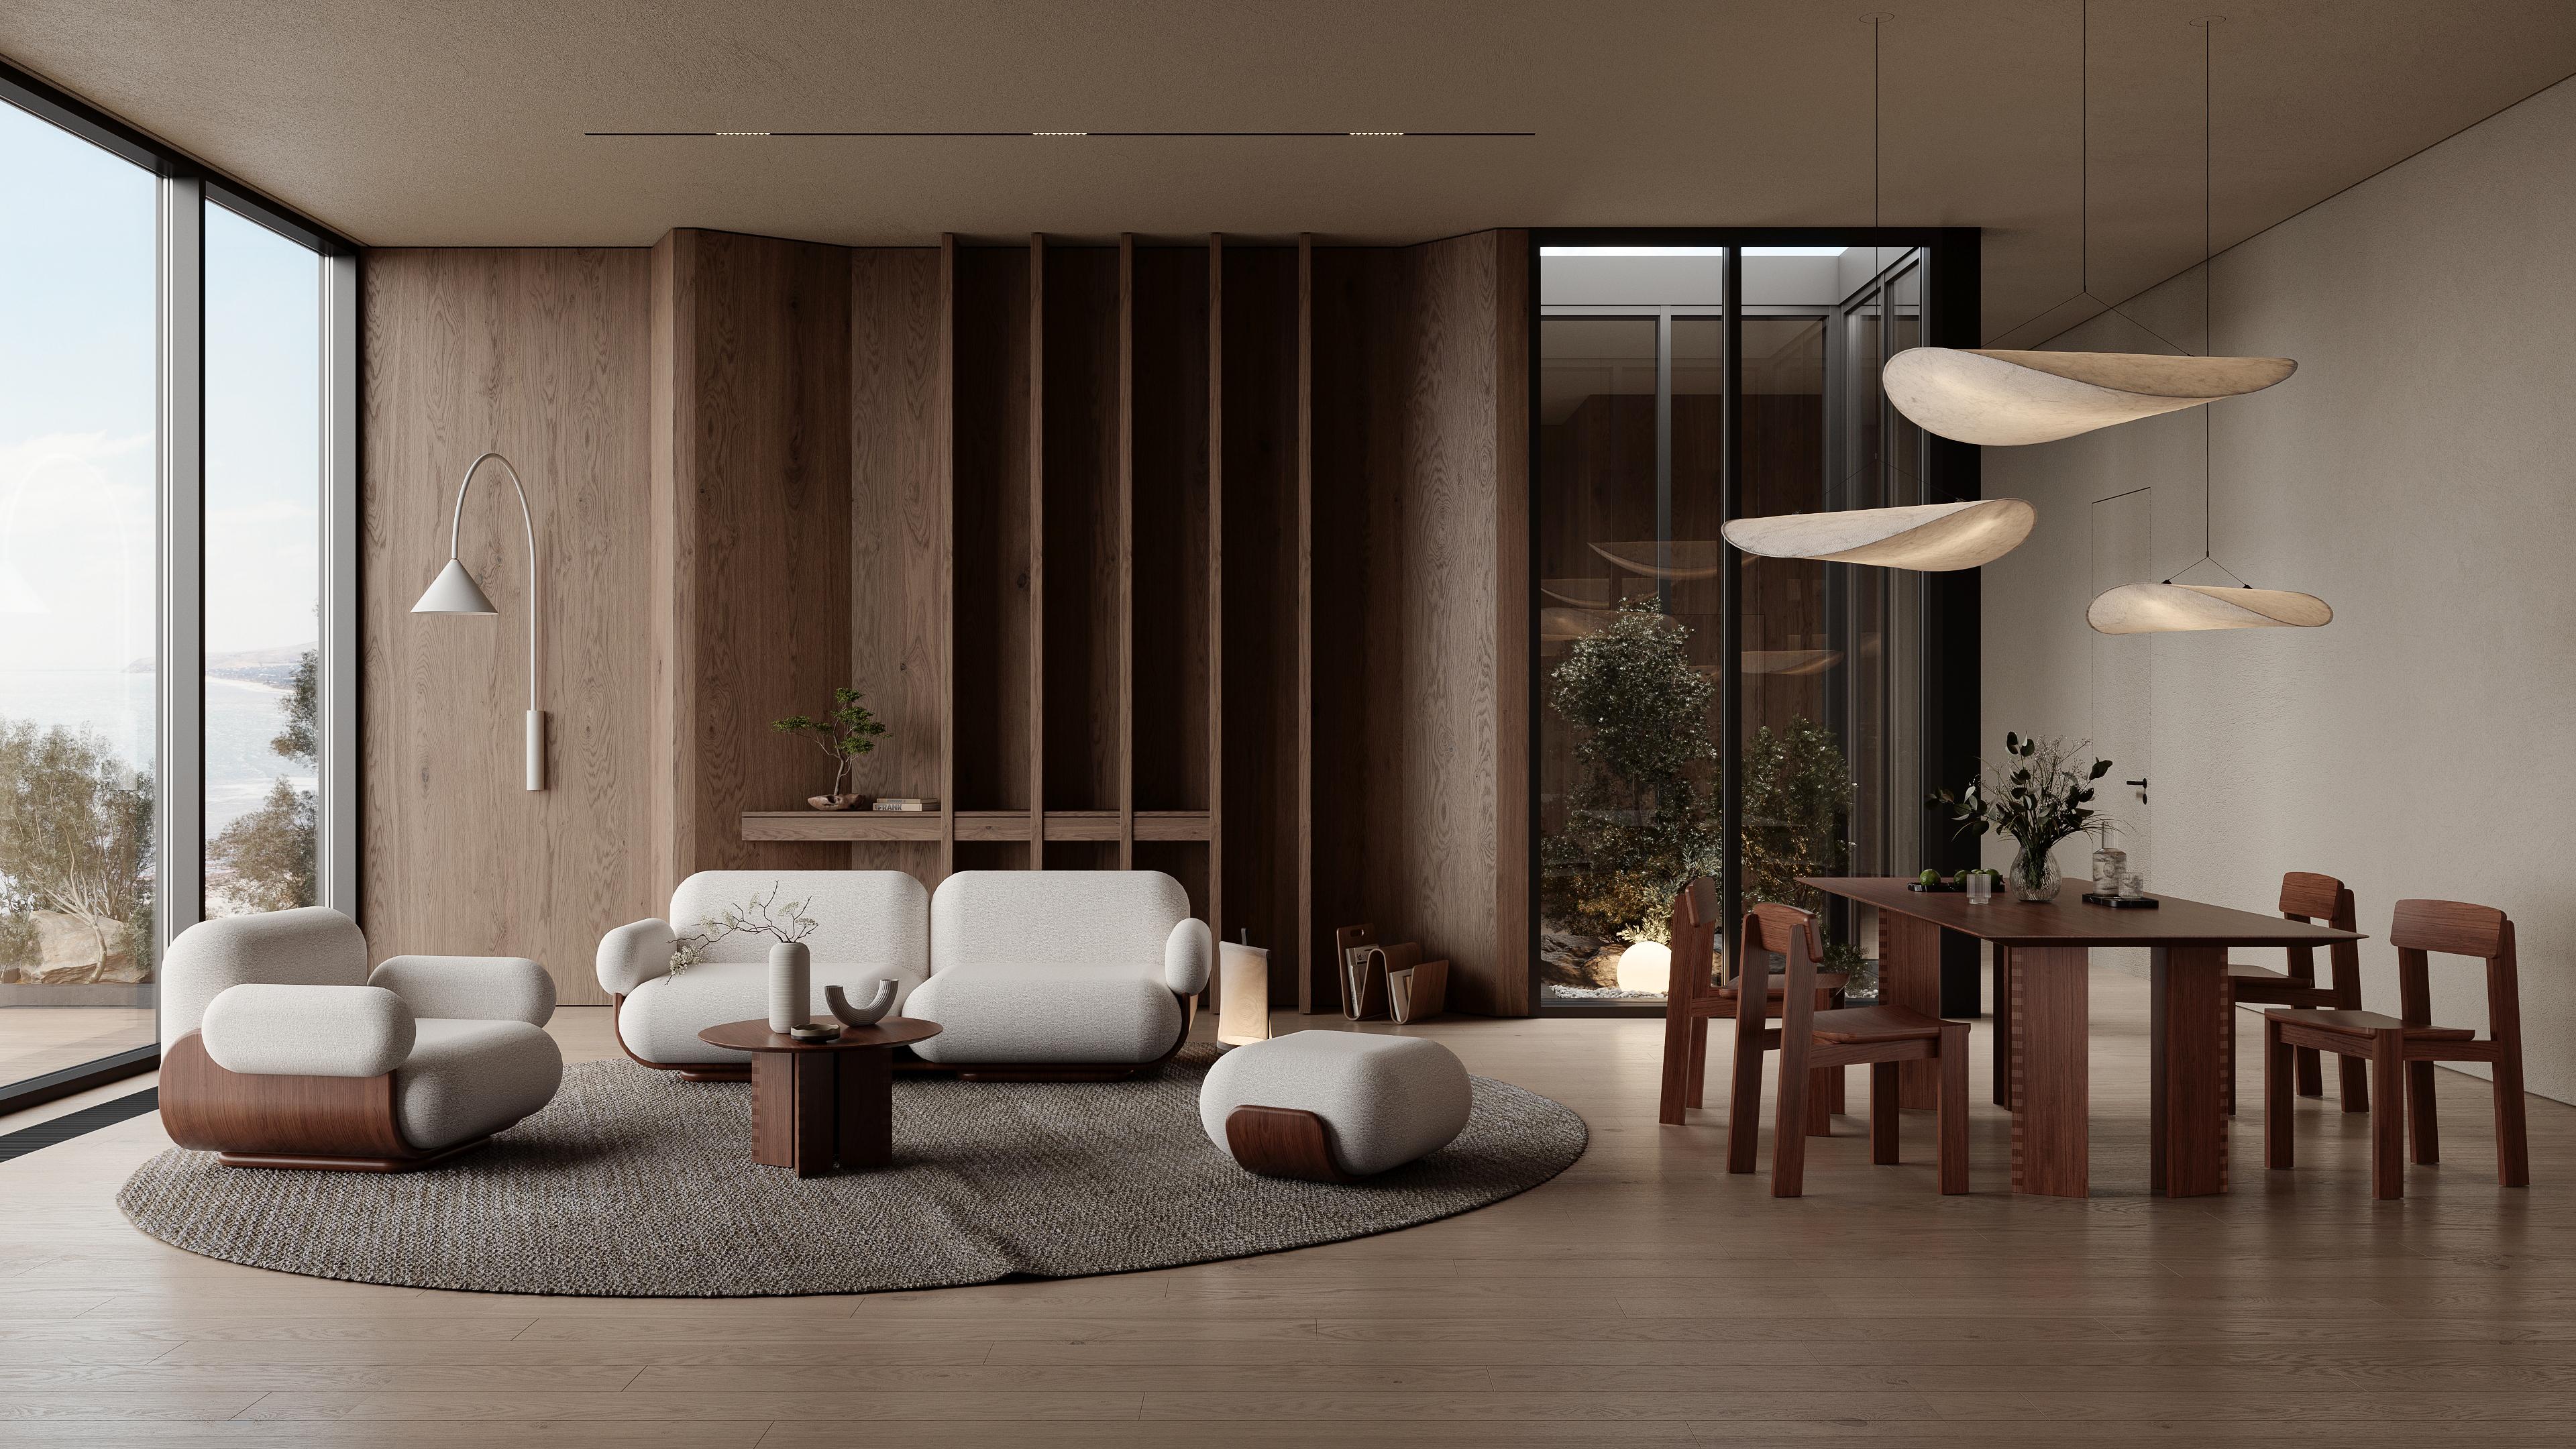 Das Cannoli-Sofa ist ein atemberaubendes Herzstück für jeden Lounge-Bereich. Sein Design wird durch den sichtbaren Holzrahmen bestimmt, der die gepolsterten Elemente des Sofas umschließt.
 
Der Rahmen aus Eichenholz ist gebogen und geformt, um ein